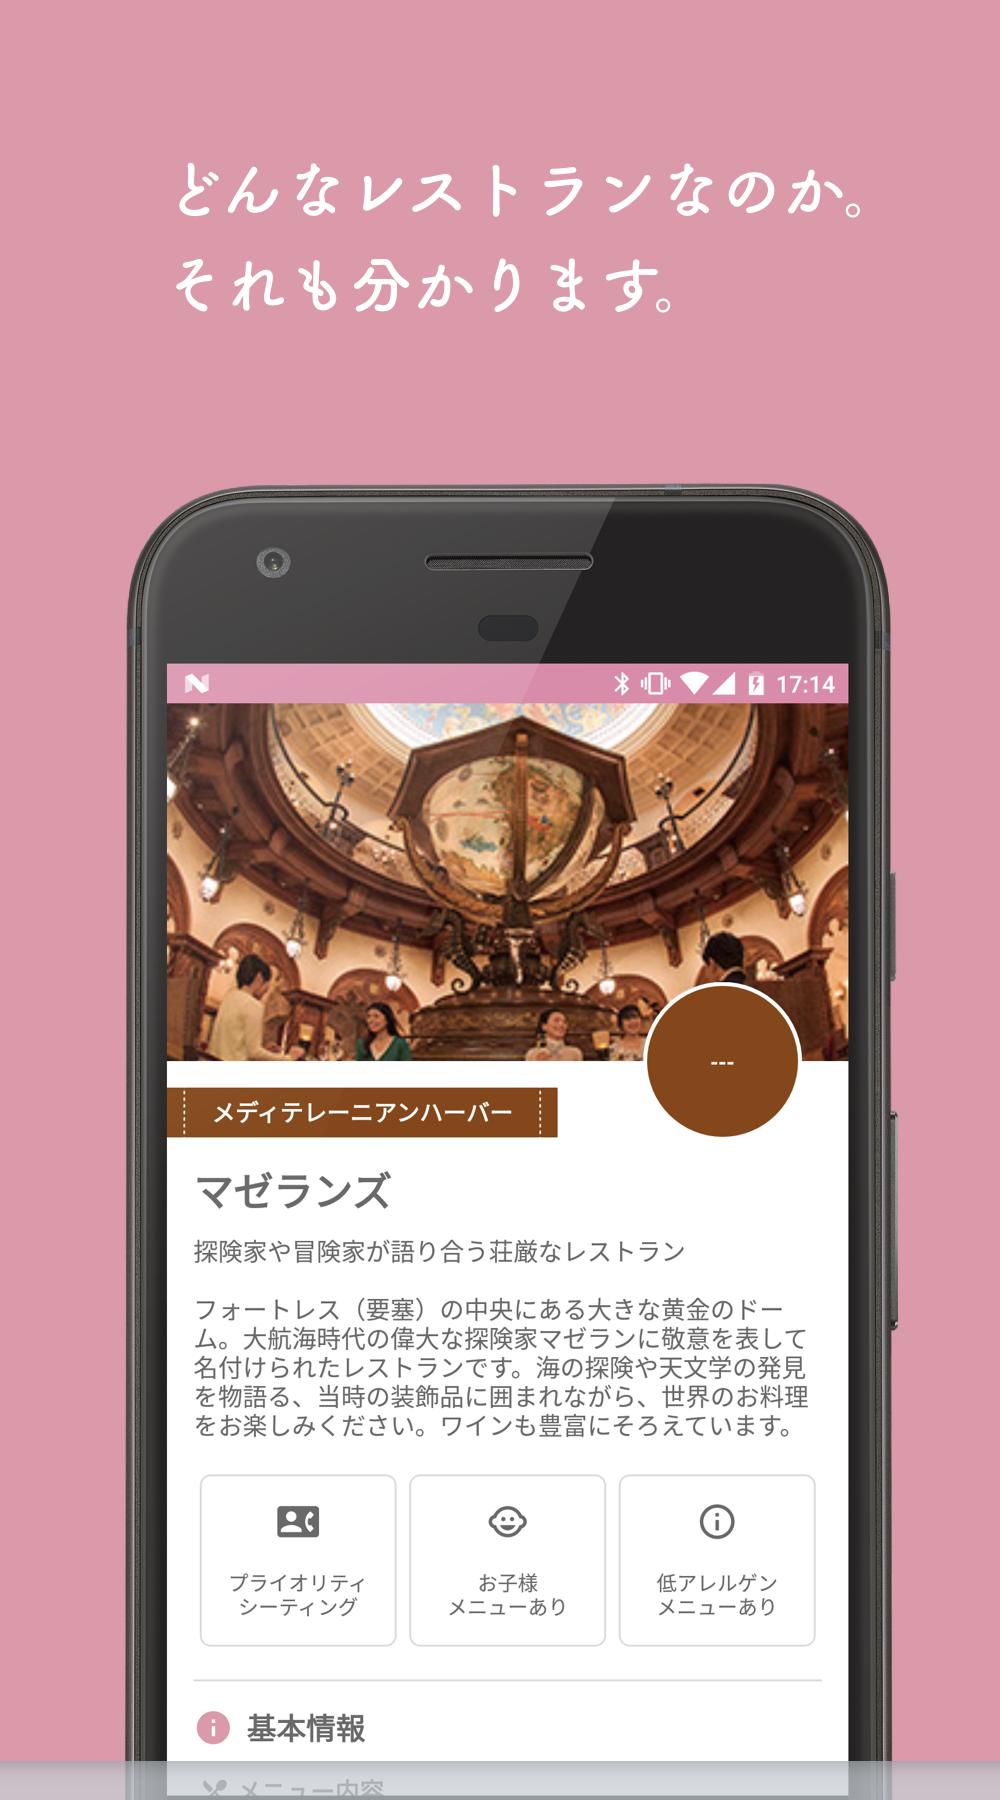 Android 用の 夢の待ち時間 For 東京ディズニーシー Apk をダウンロード